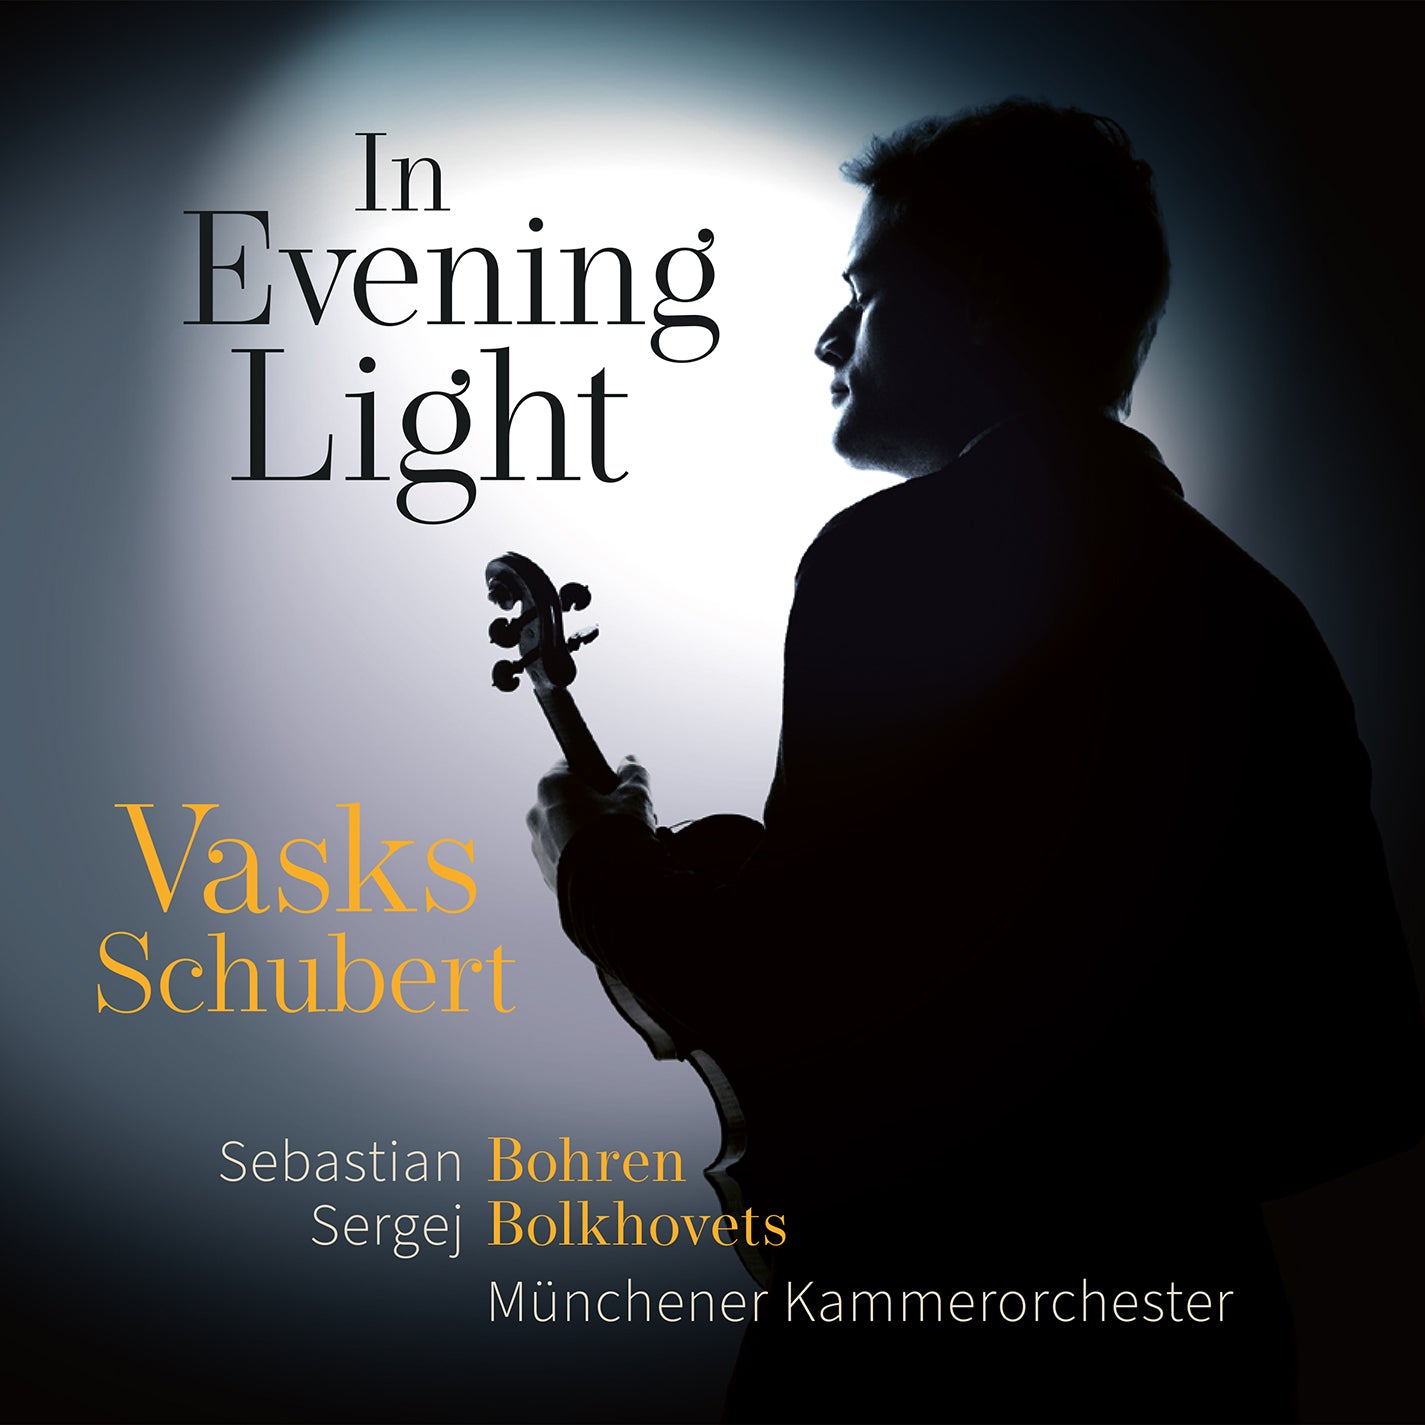 In Evening Light / Vasks Schubert